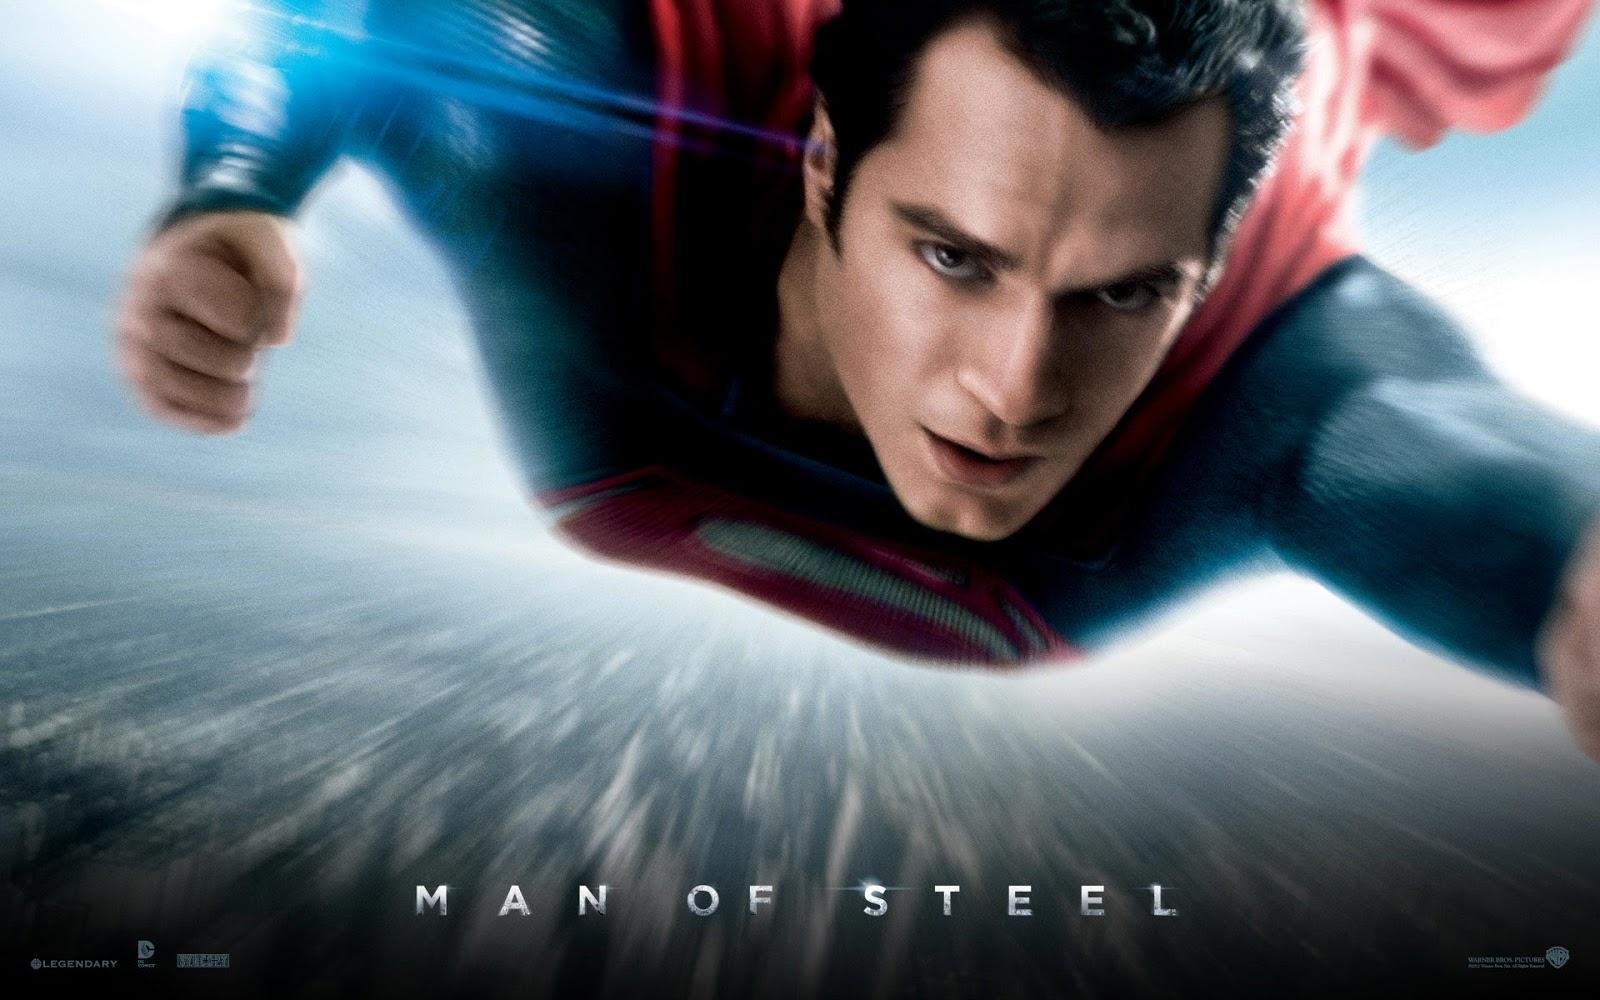 Superman. El hombre de Acero (Man of Steel)